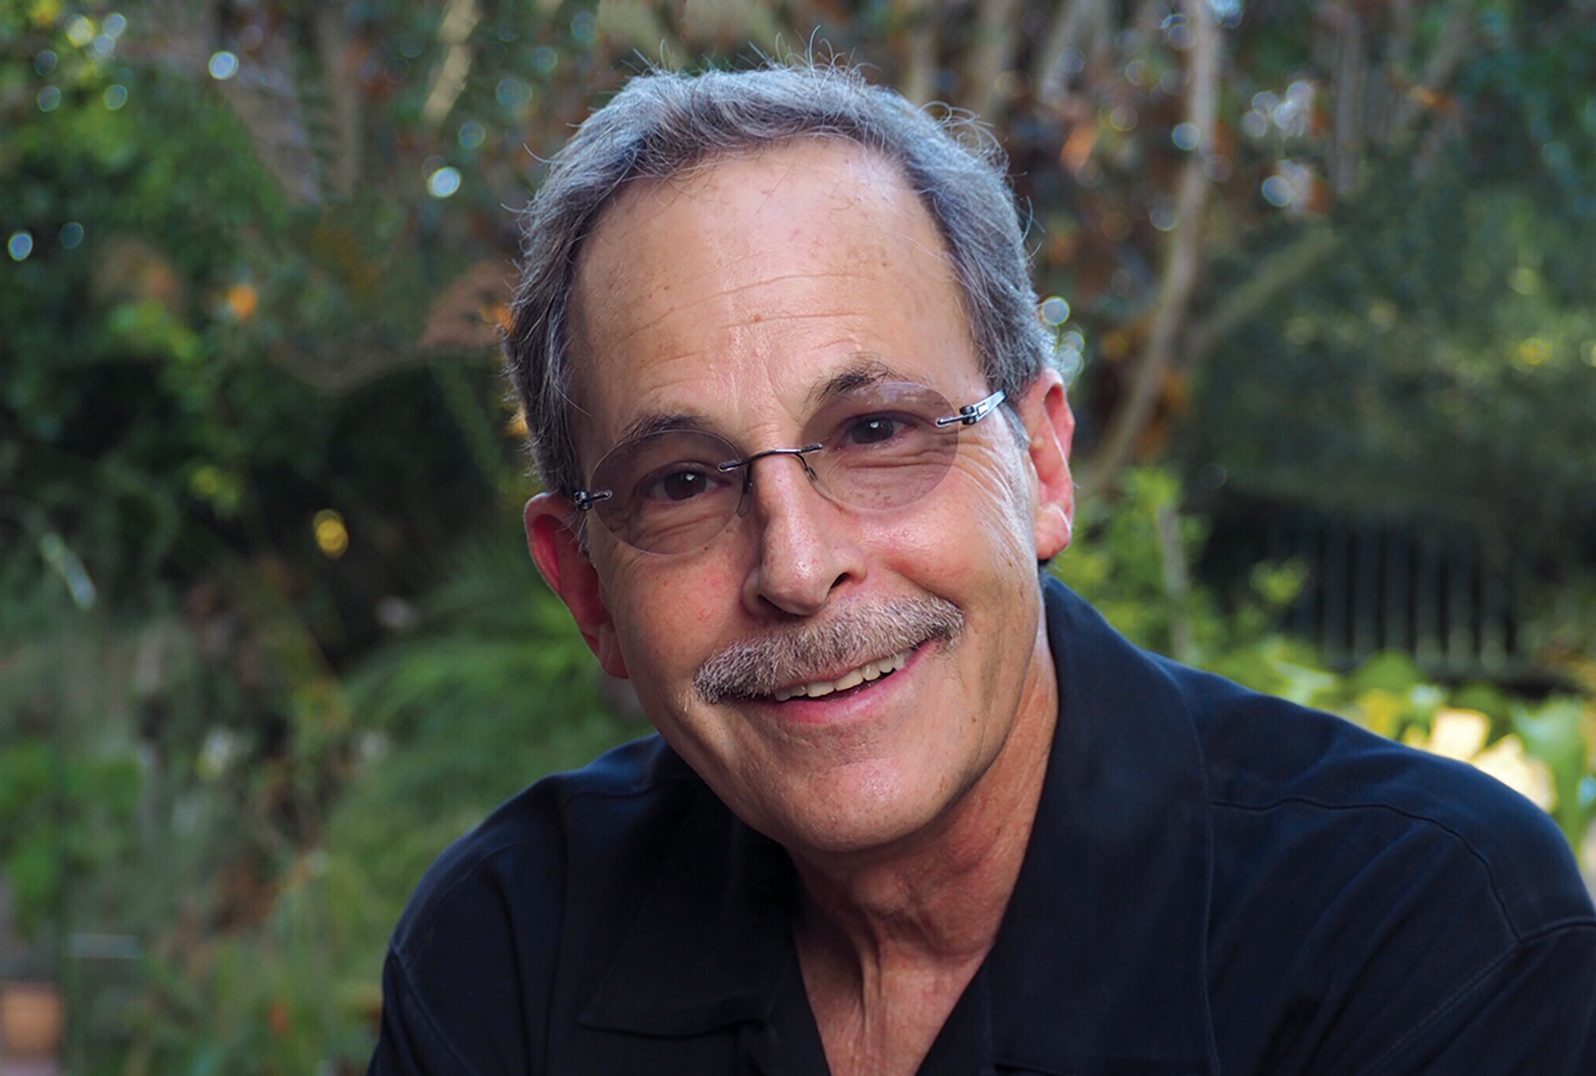 Dr. Mark Goldstein